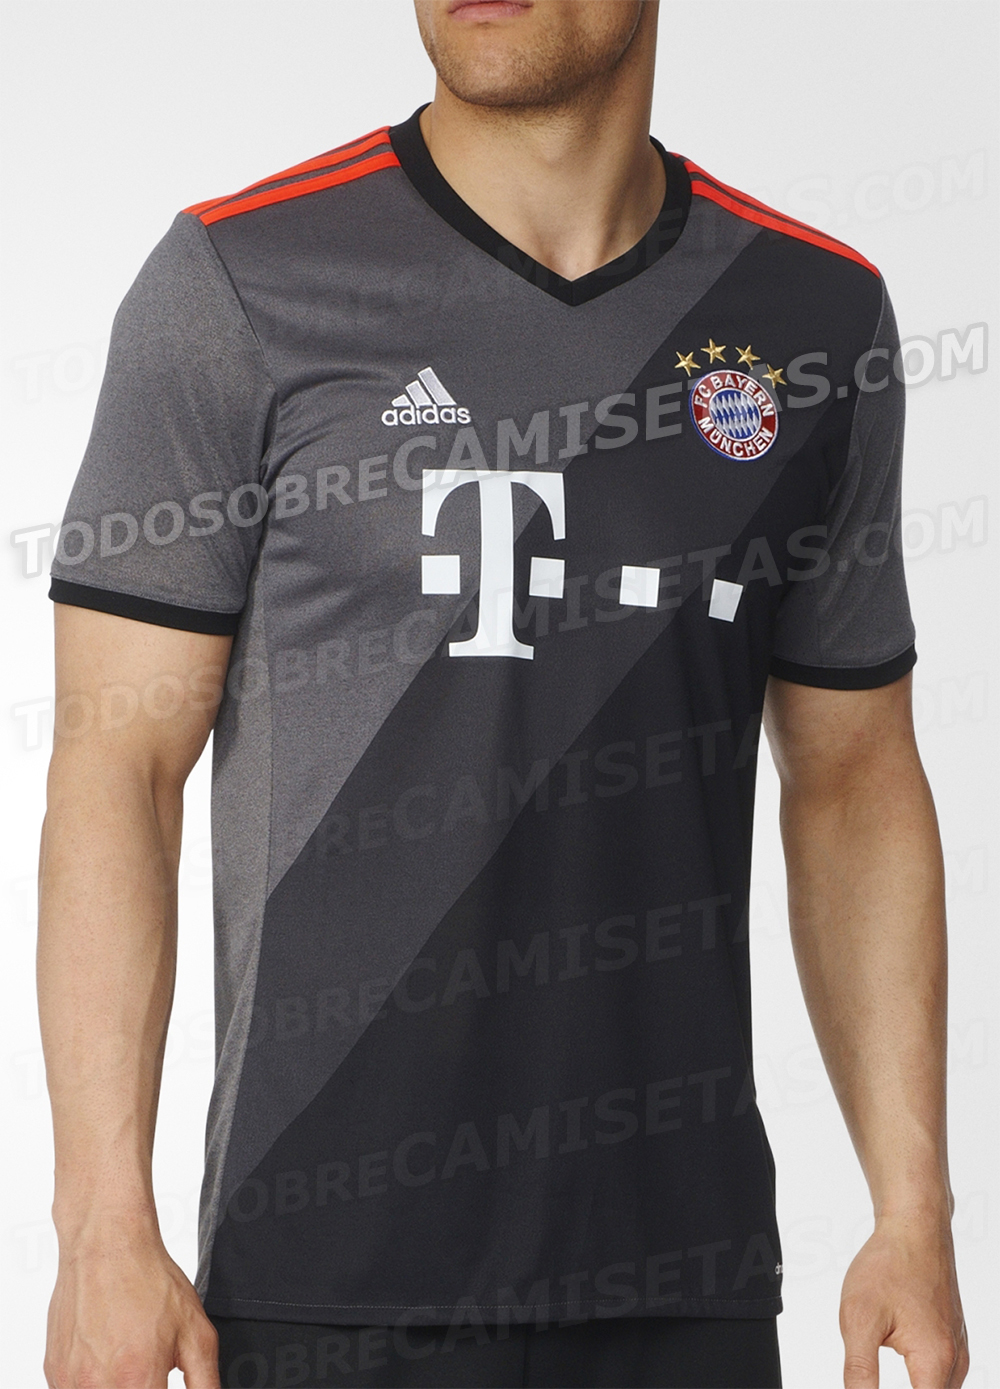 Bayern Munich 2016-17 adidas away kit LEAKED